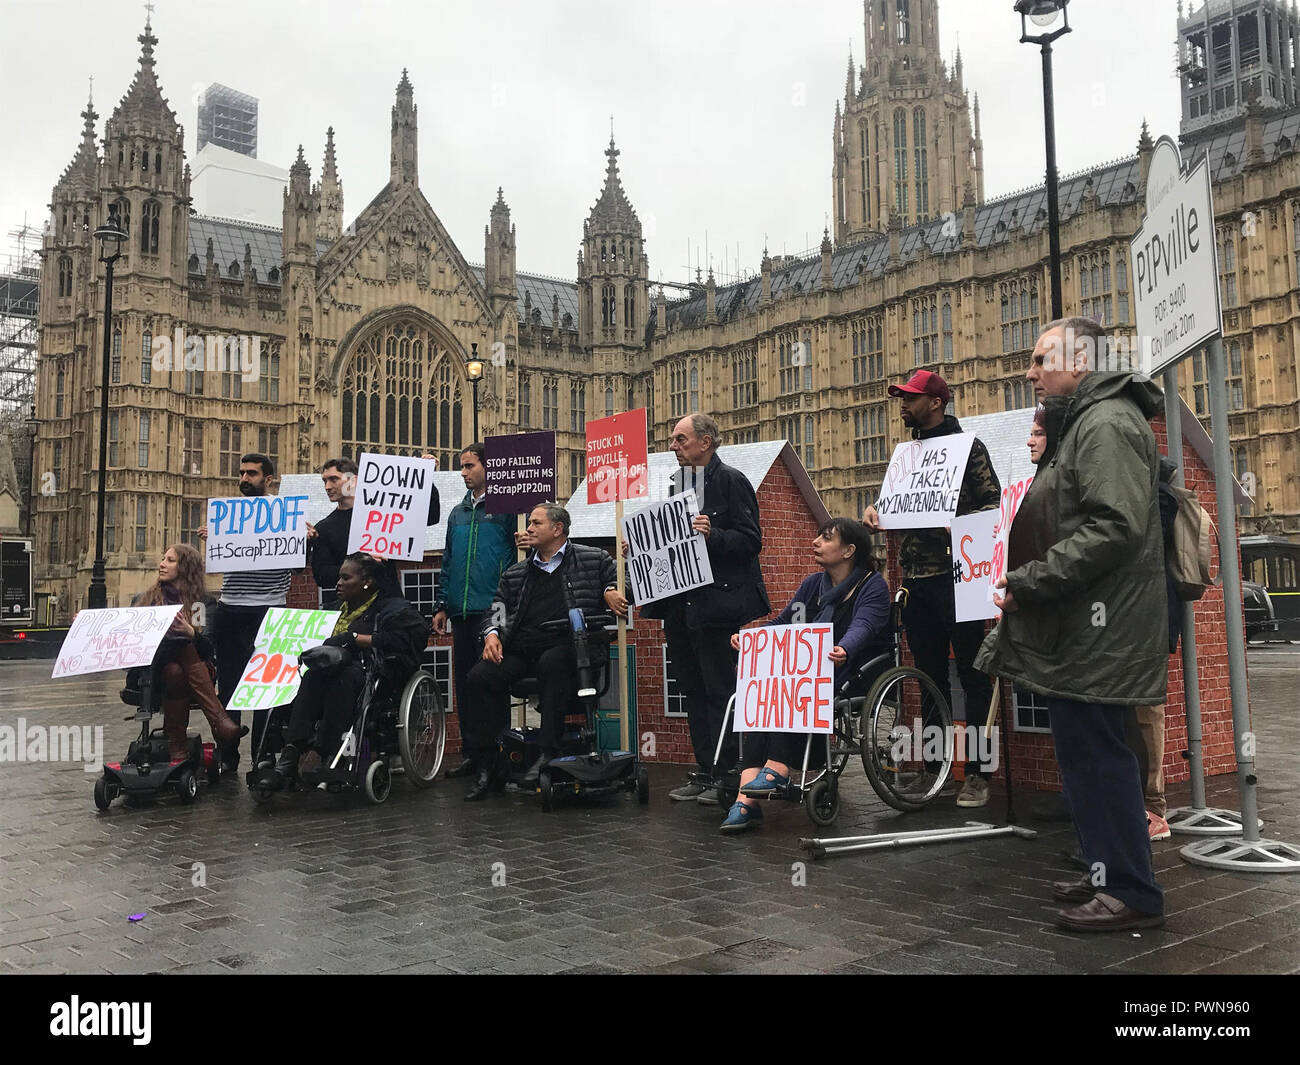 Menschen mit Multipler Sklerose (MS) und Aktivisten ketteten sich an Backsteinhäuser vor dem Houses of Parliament im Zentrum von London, um gegen die "willkürliche" 20-Meter-Entscheidung der Regierung zu protestieren, bei der nur Menschen, die nicht mehr als 20 Meter gehen können, eine "Kosteneinsparungsübung" erhalten. Stockfoto